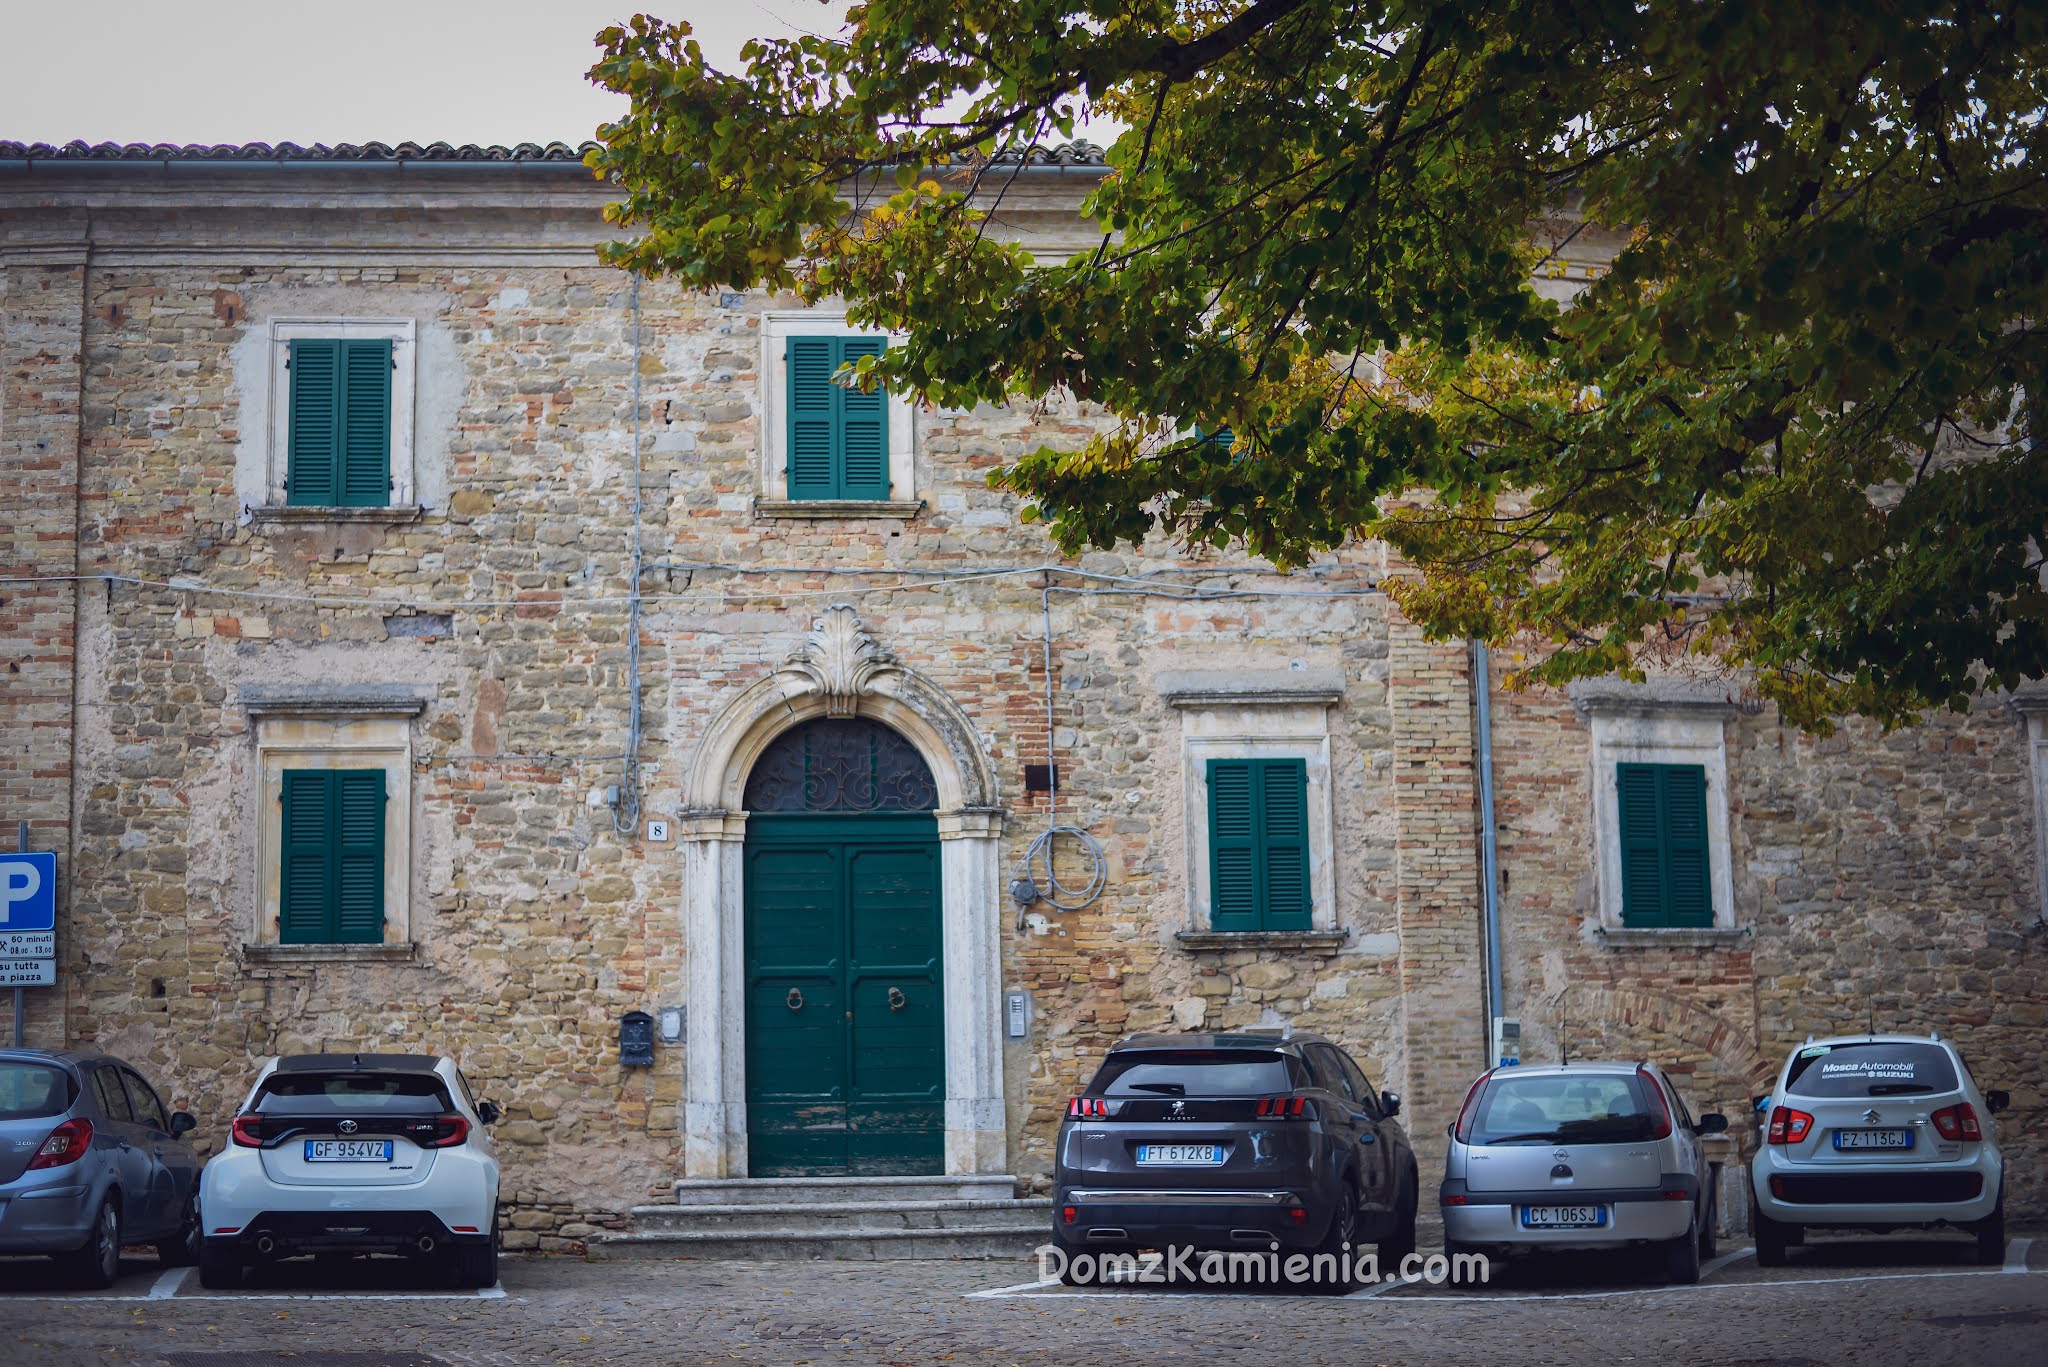 Cingoli Marche region Włoch nieznany. Dom z Kamienia blog